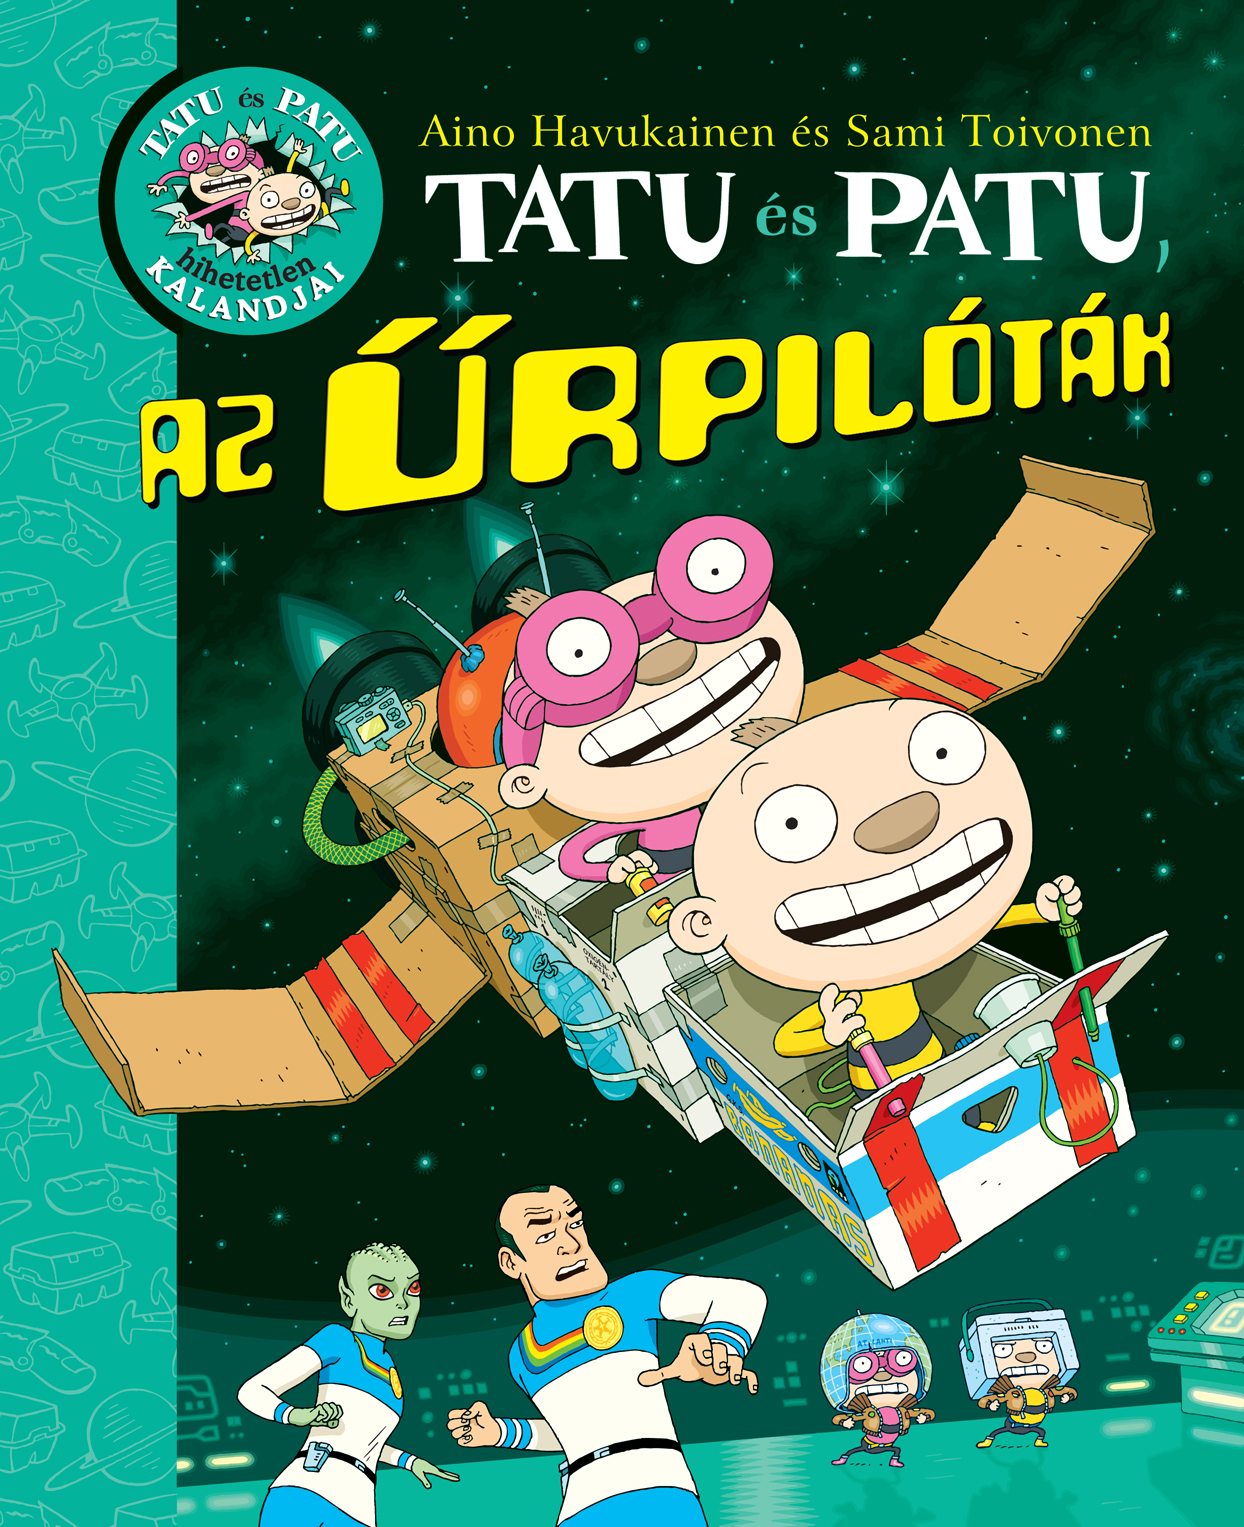 Tatu és Patu, az űrpilóták